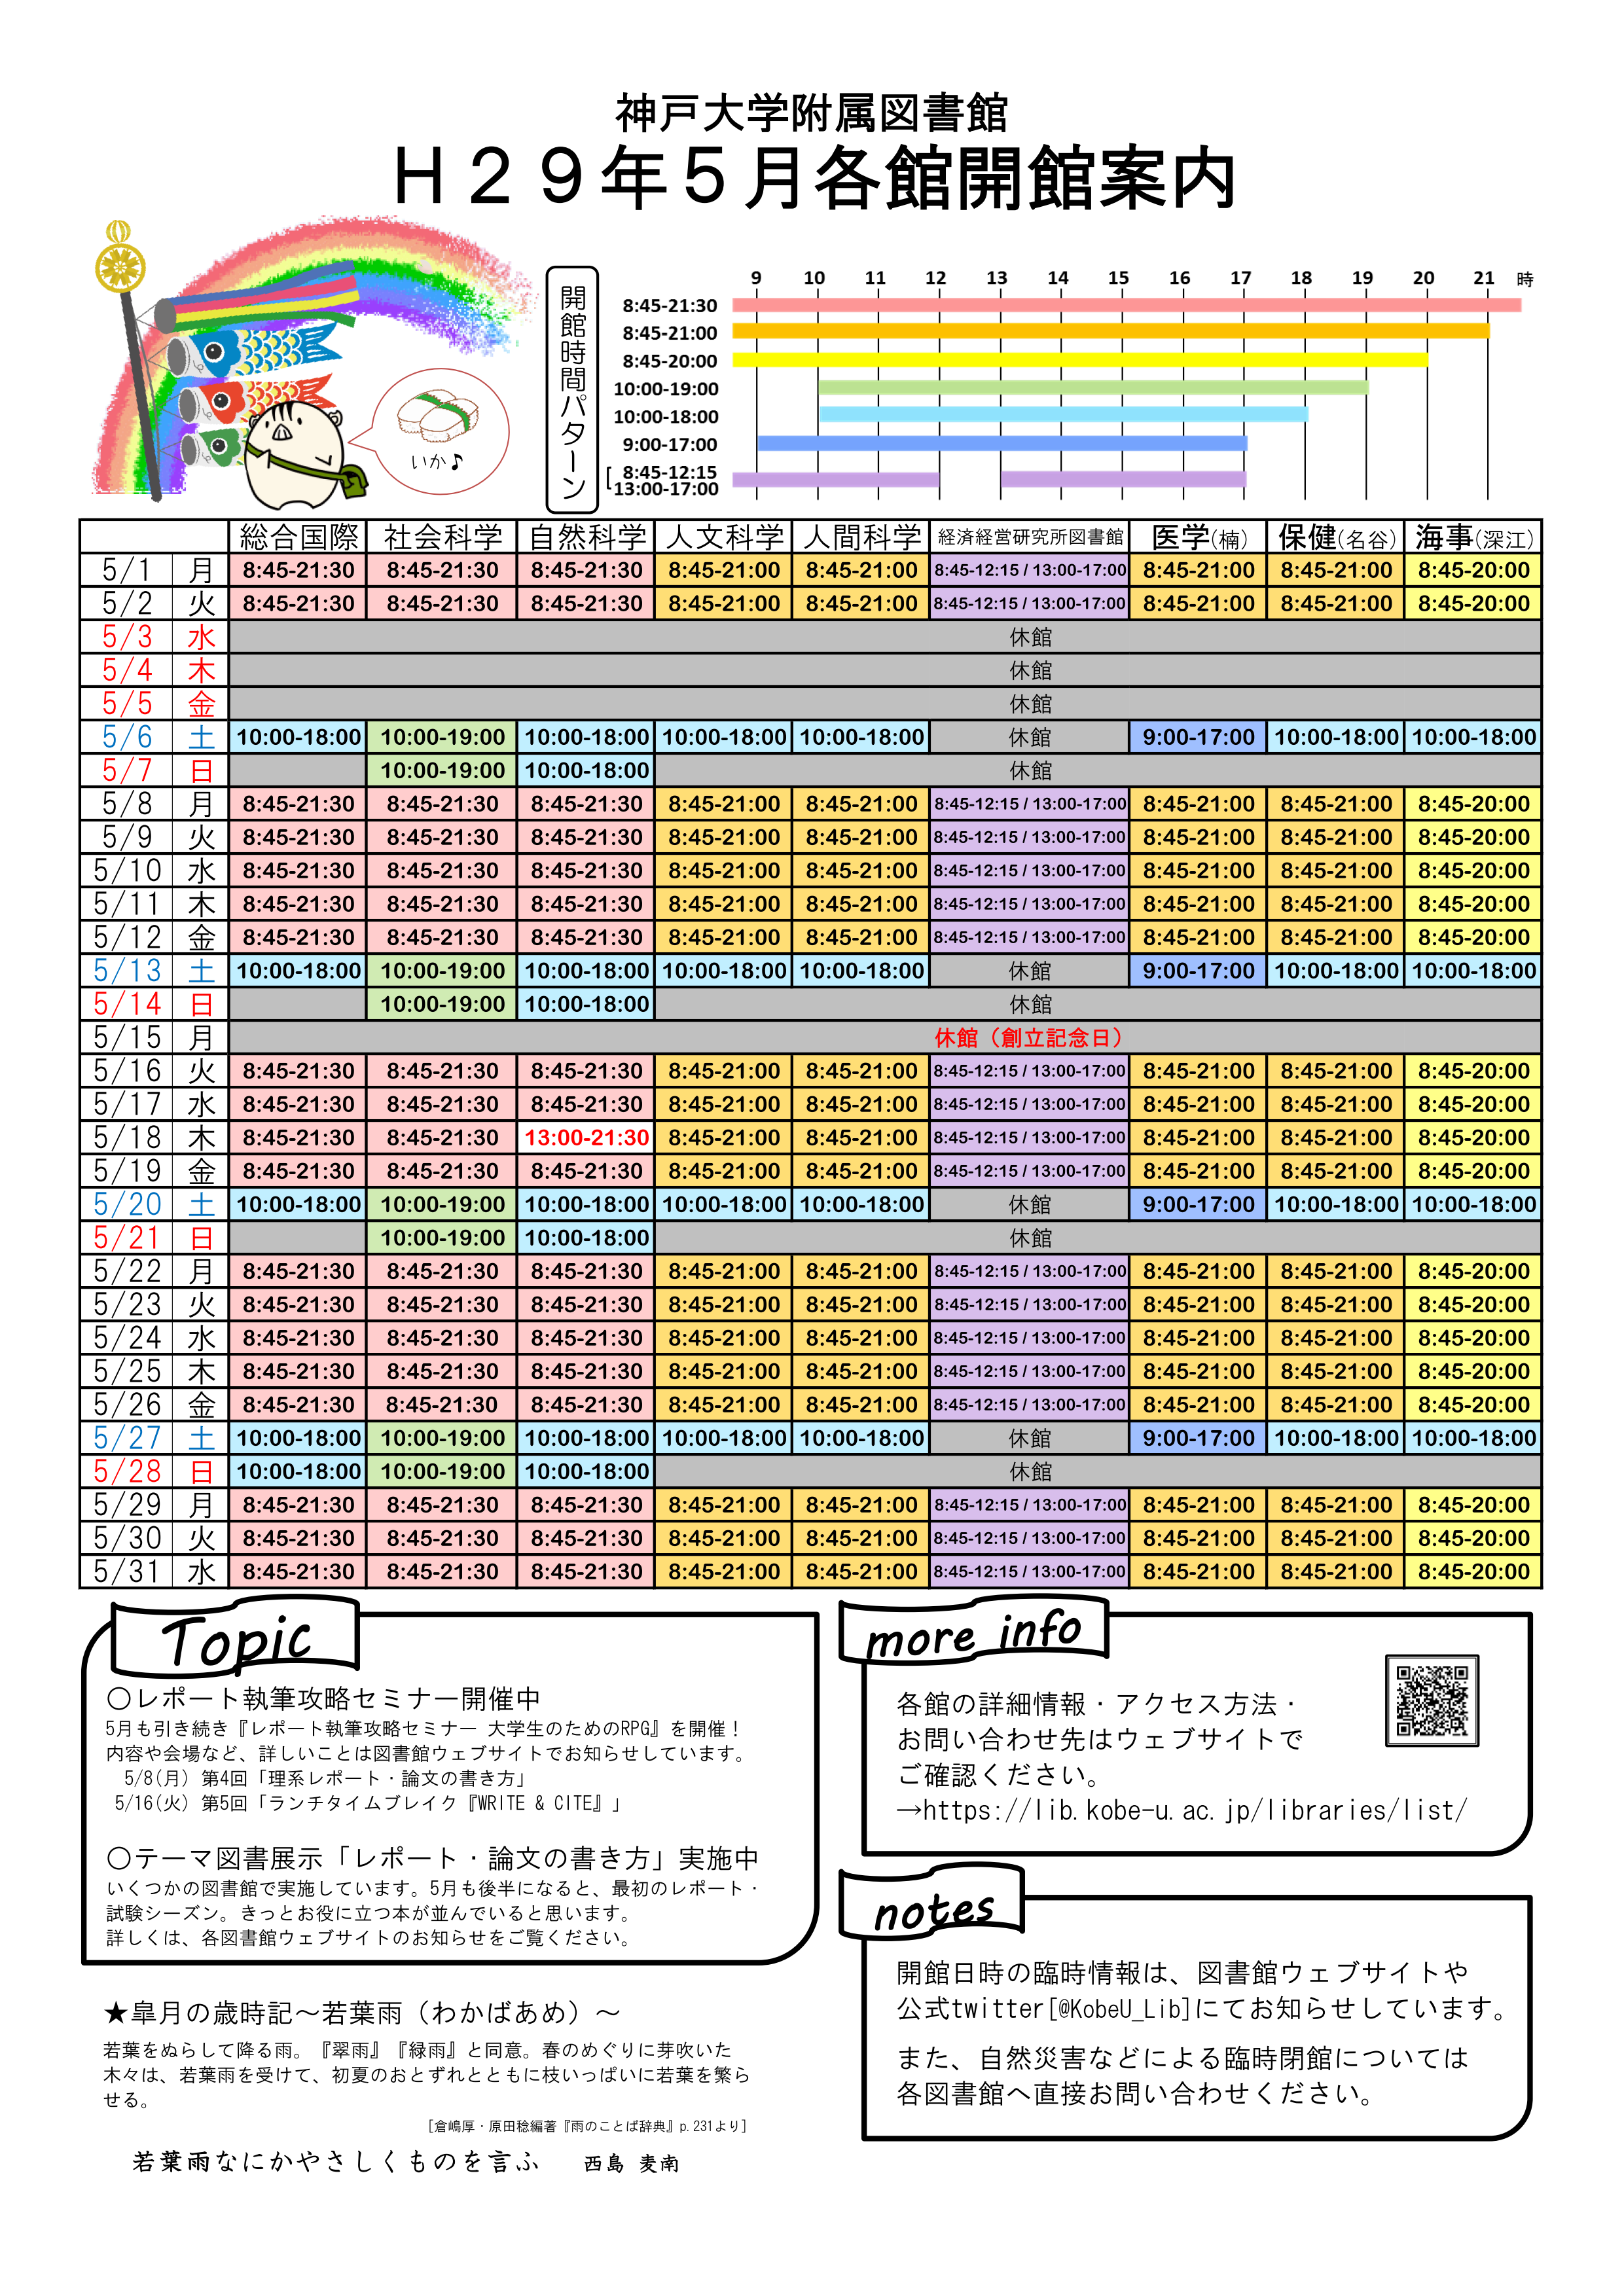 17年5月の全館開館カレンダーを作成しました 神戸大学附属図書館